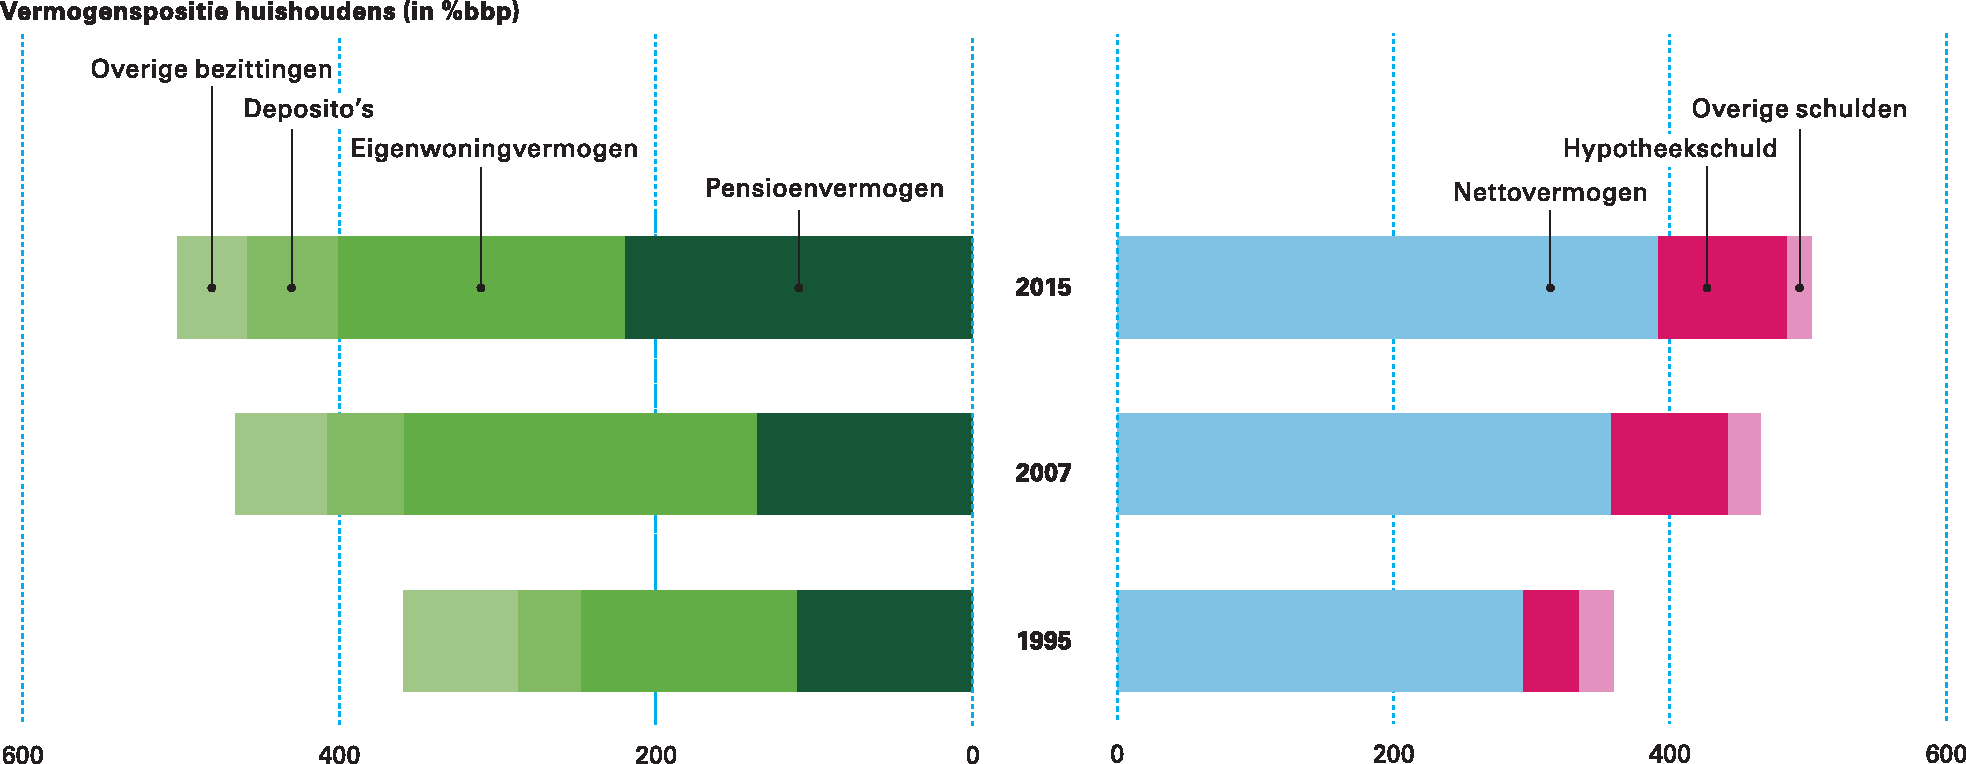 Figuur 1.2.5 Vermogenspositie huishoudens in Nederland (in % bbp)